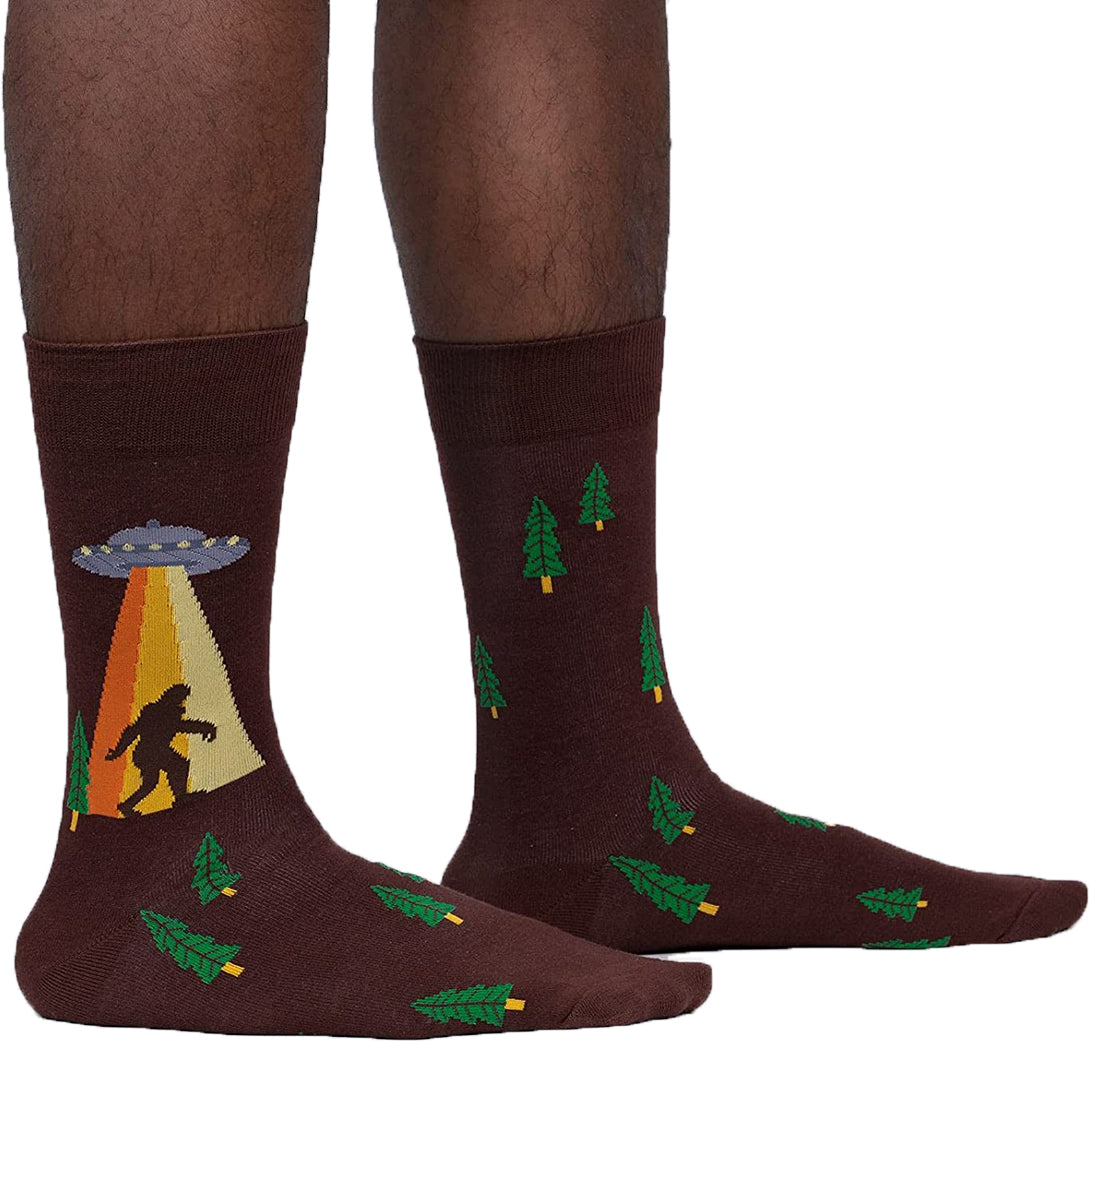 SOCK it to me Men's Crew Socks (MEF0522),Unbelievable - Unbelievable,One Size